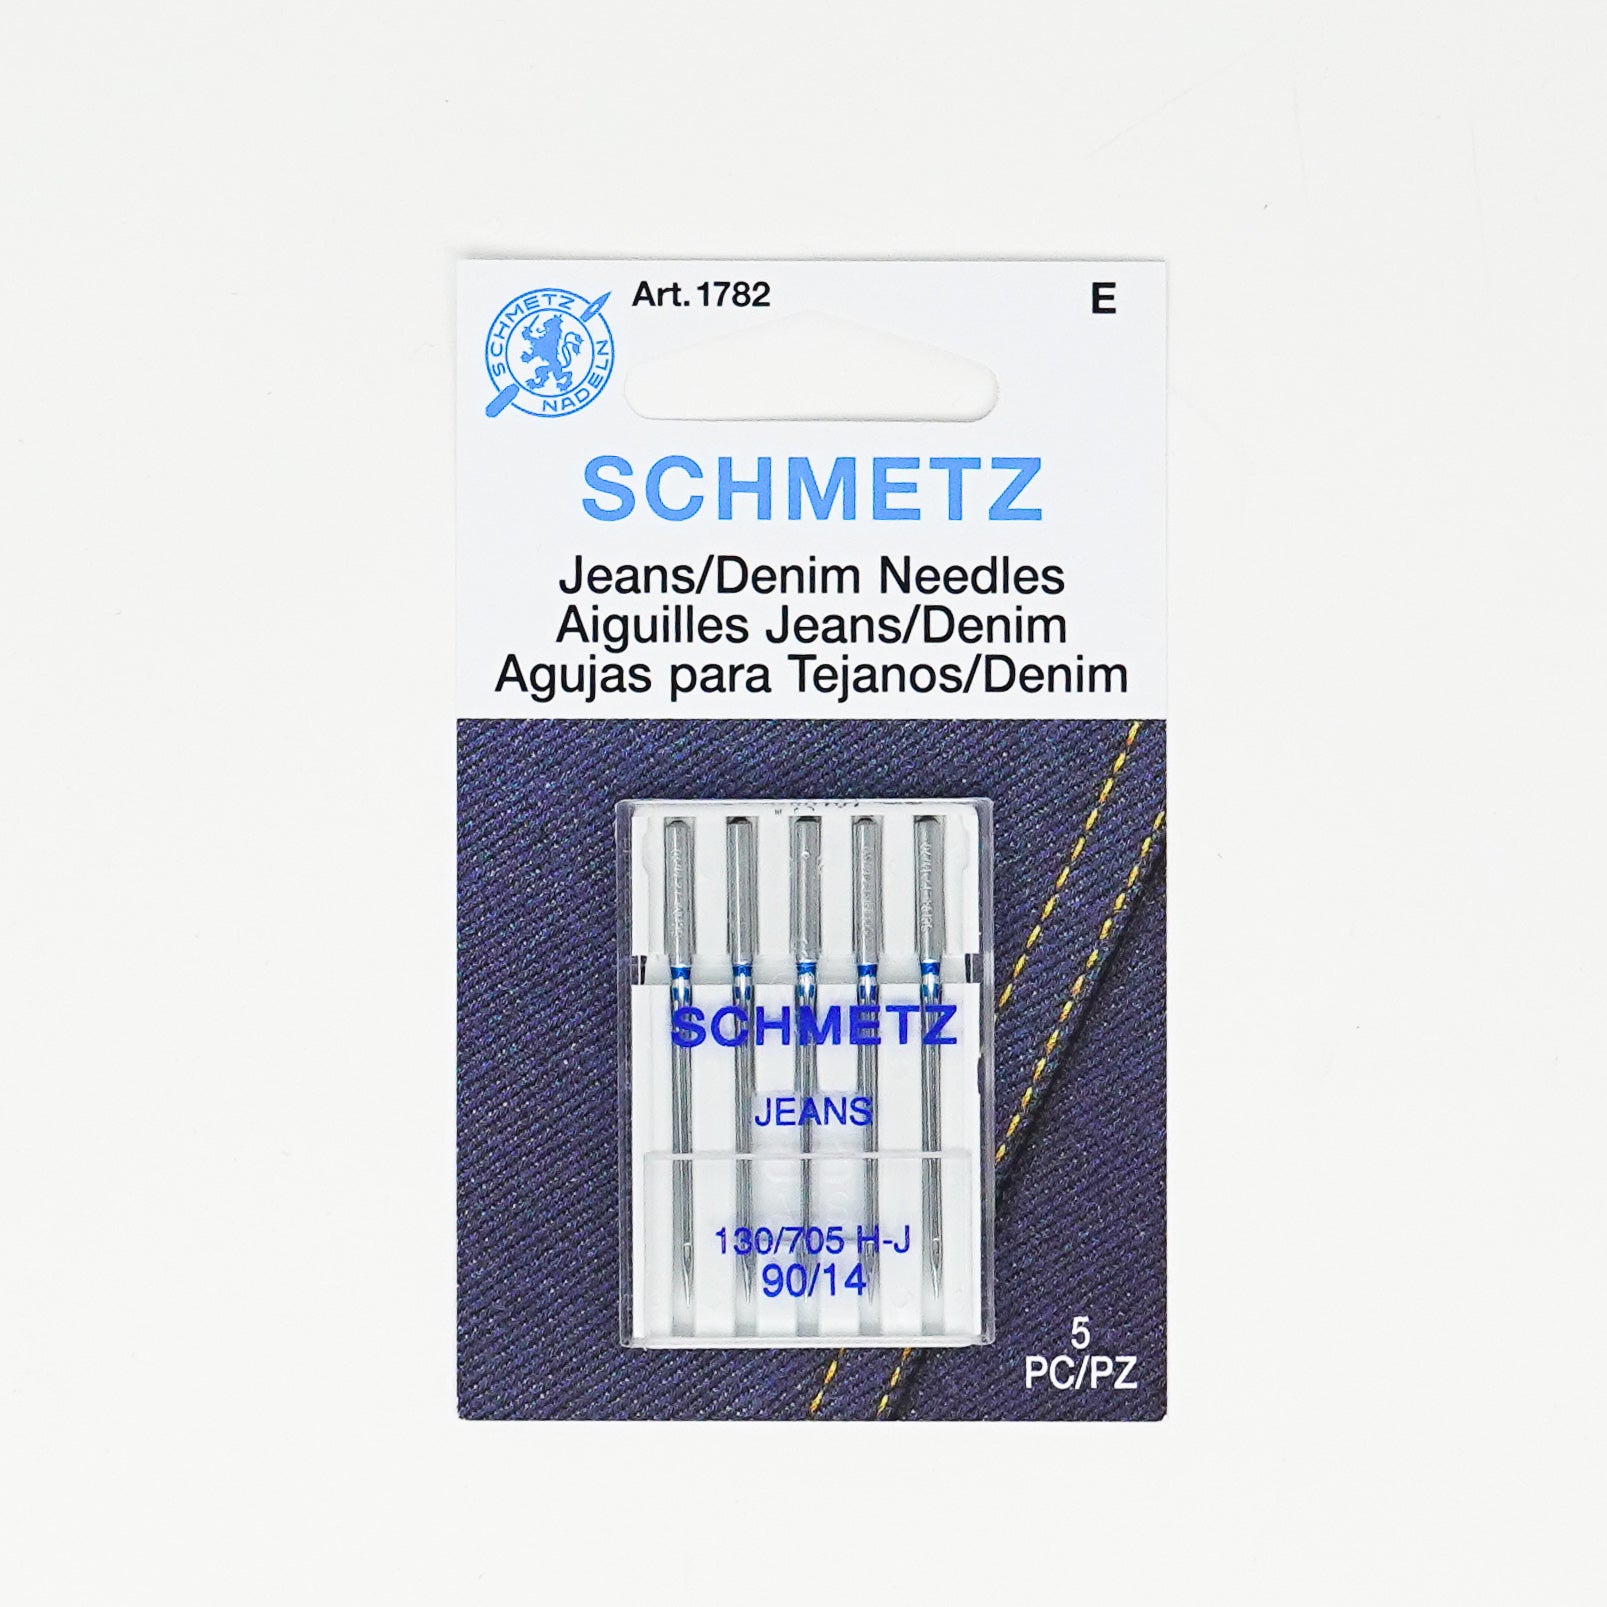 Schmetz Sewing Machine Needles - Denim - 14/90 - set of 5